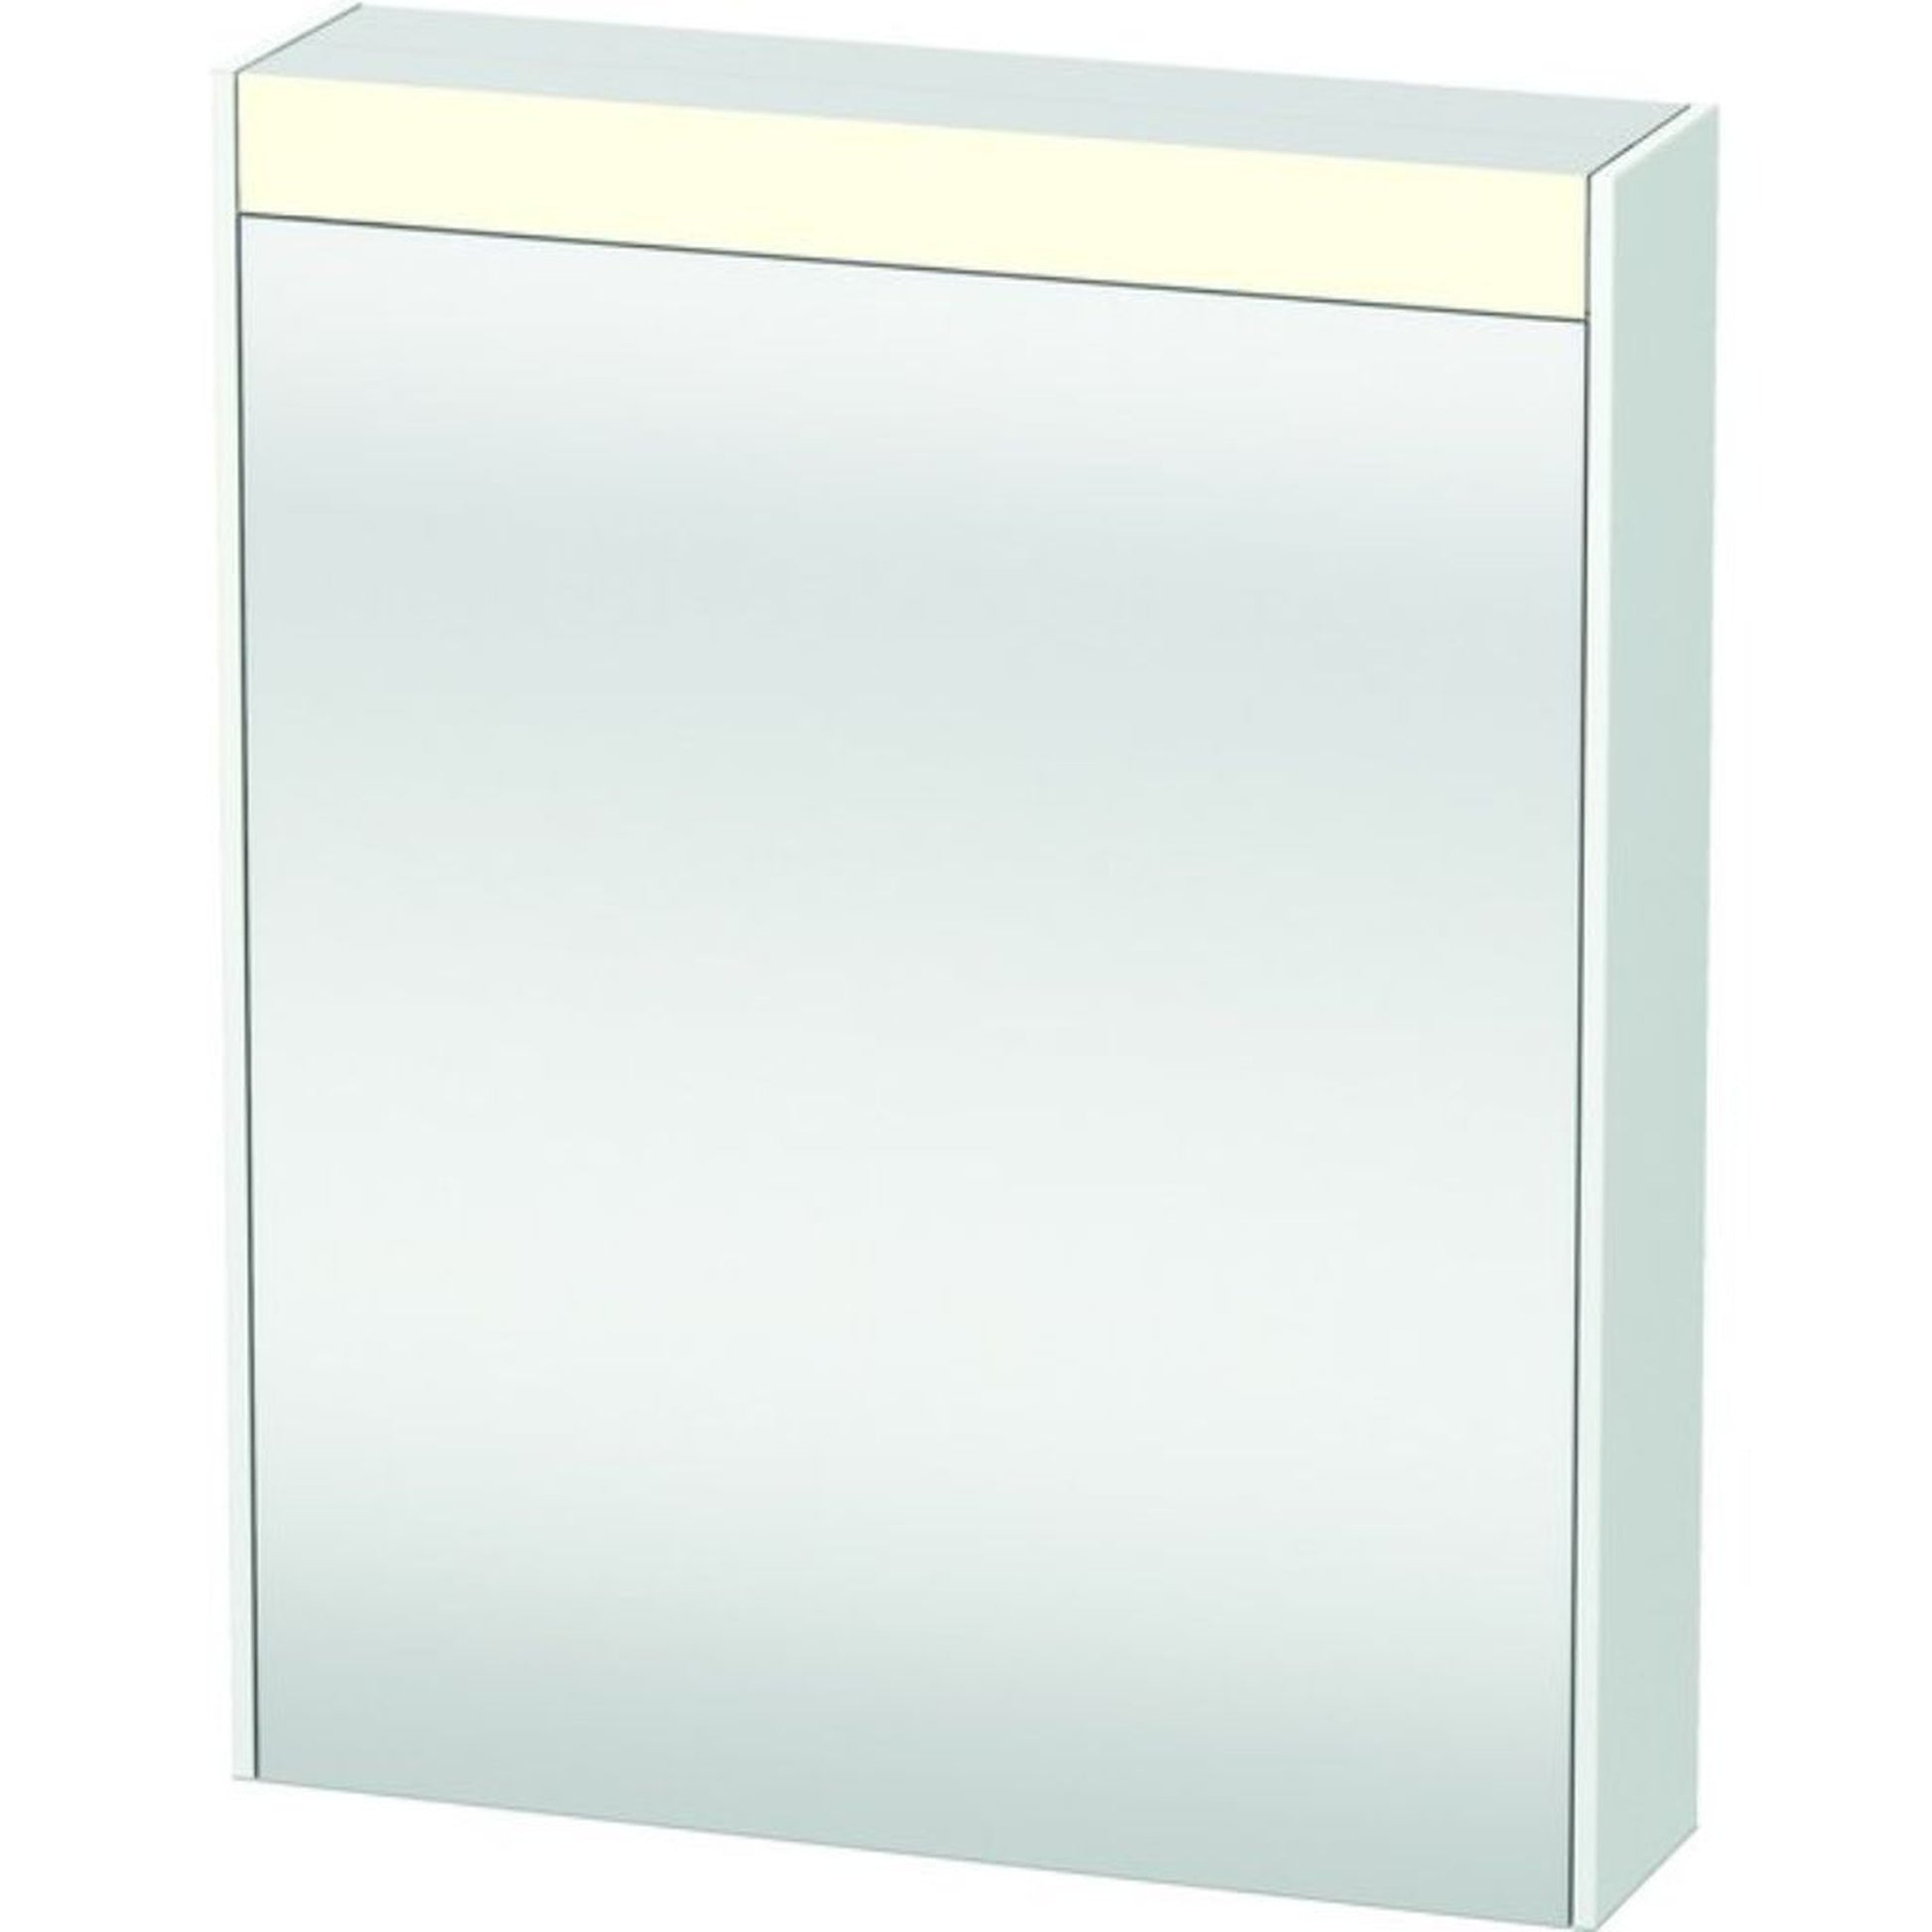 Duravit Brioso 24" x 30" x 6" Mirror With Right Hinge Cabinet and Lighting White Matt